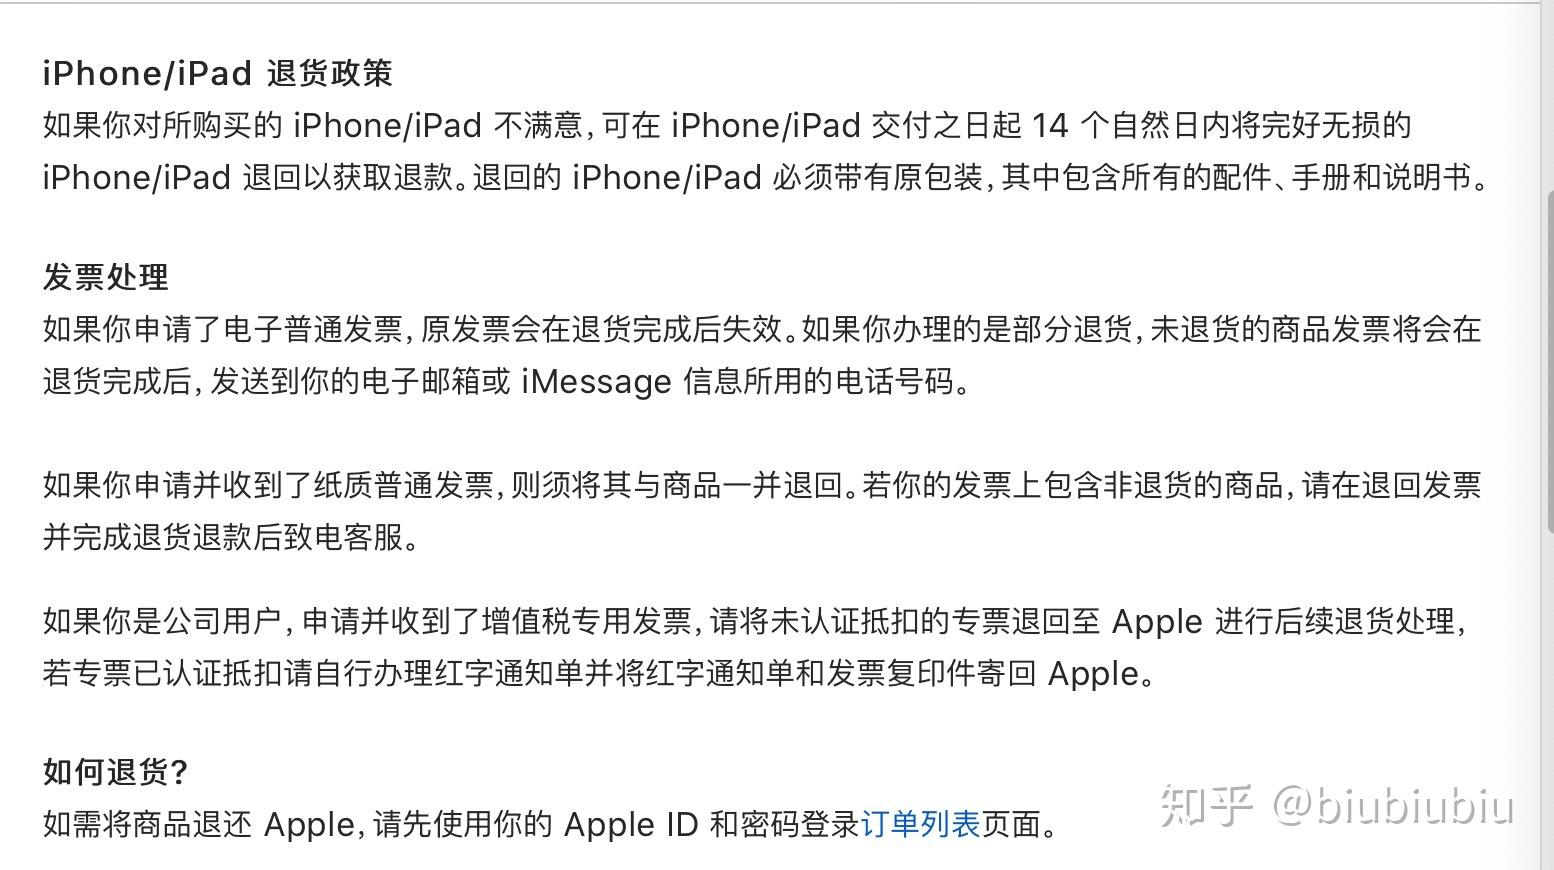 未拆封初代 iPhone 拍賣價 27 萬港元售出 - ezone.hk - 科技焦點 - iPhone - D220826